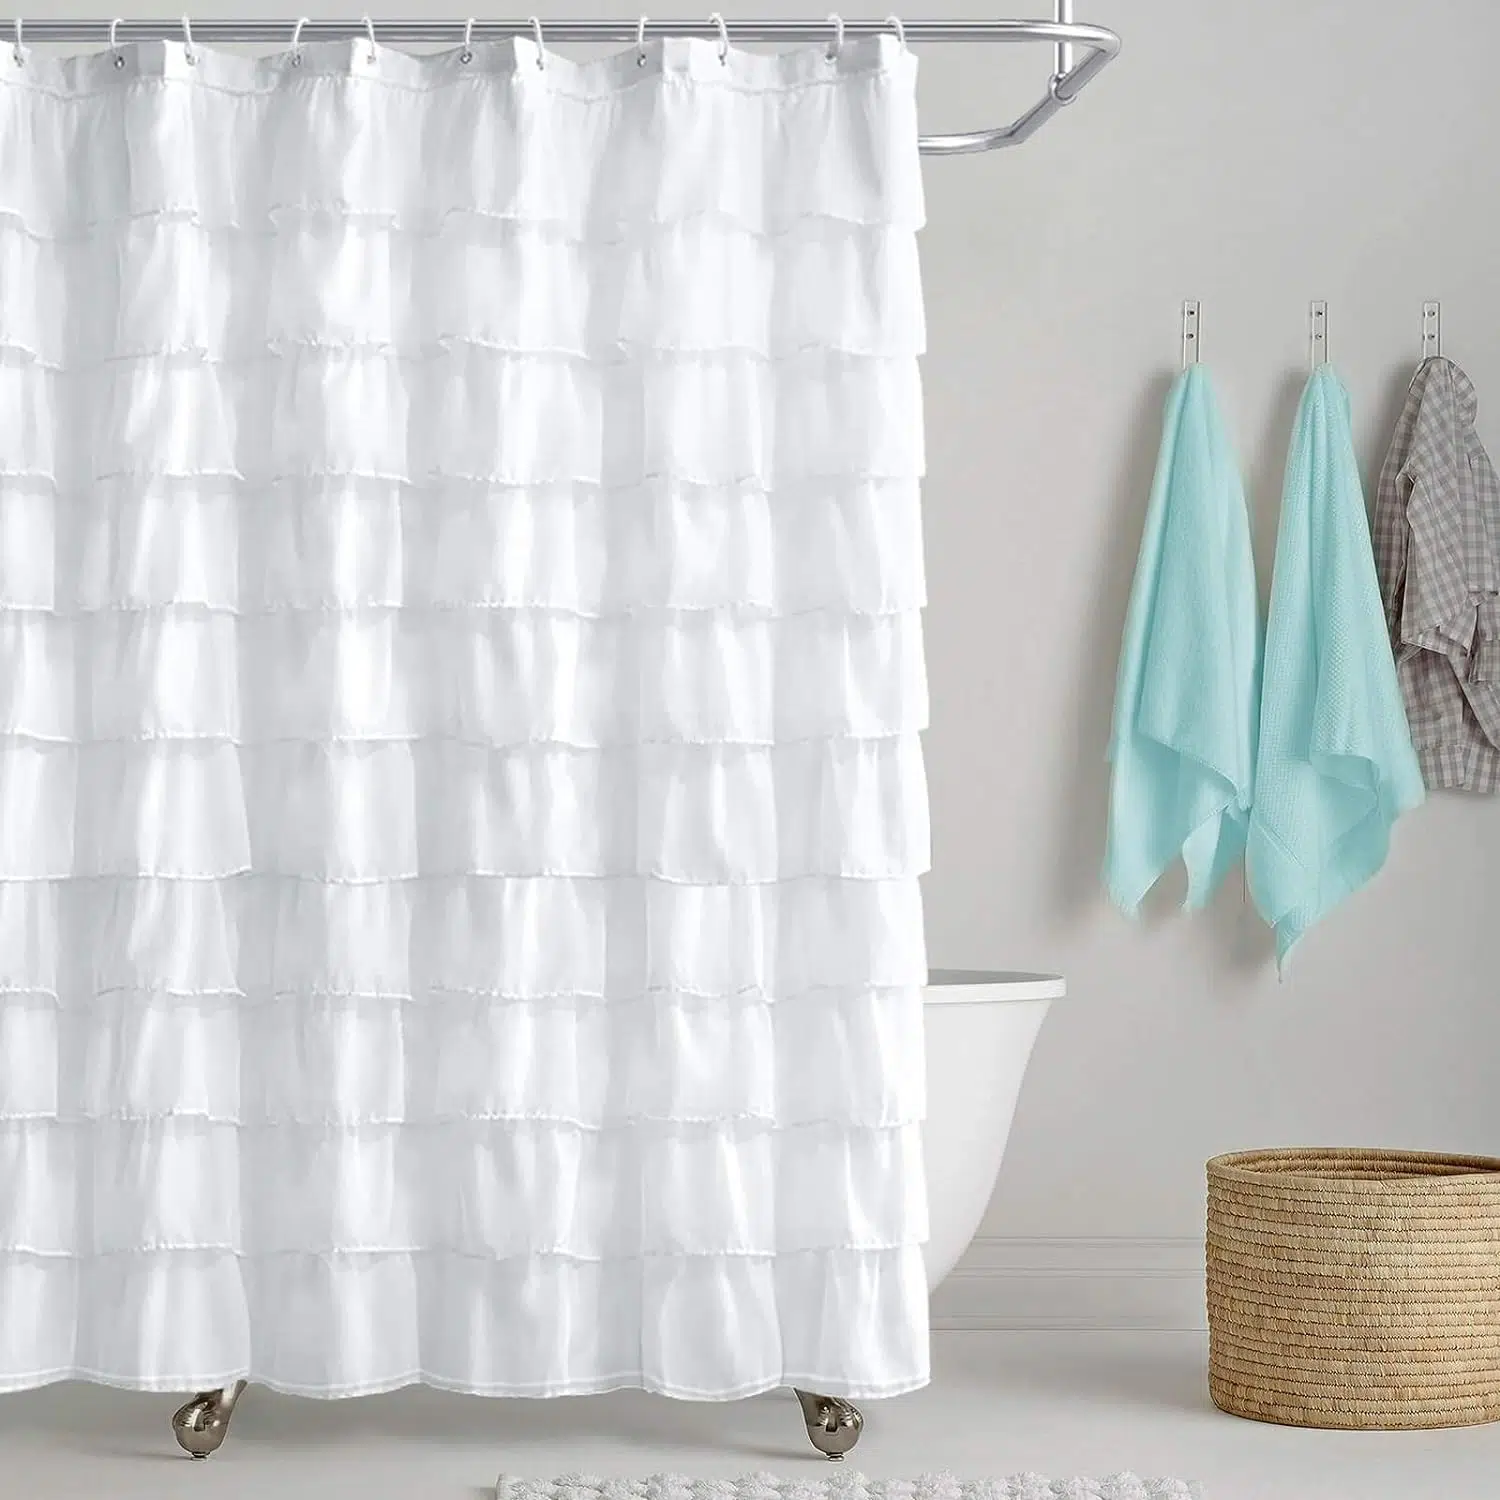 ¿Cuáles son los cuidados para una cortina de tela?